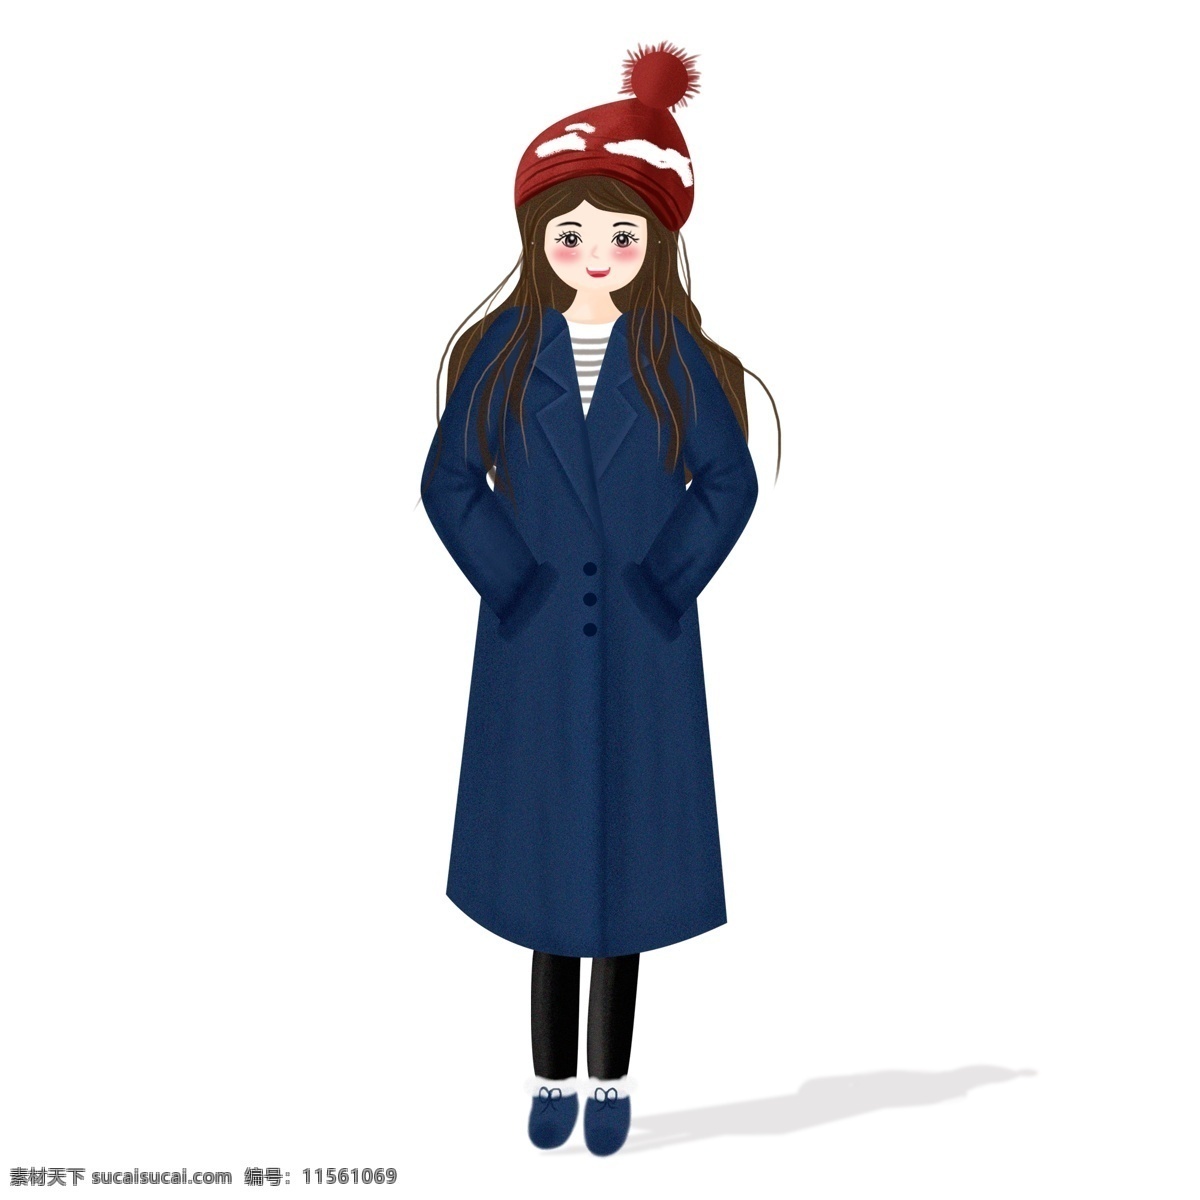 彩绘 穿着 呢子 大衣 女孩 商用 元素 可爱 卡通 韩国 冬季 小清新女生 人物设计